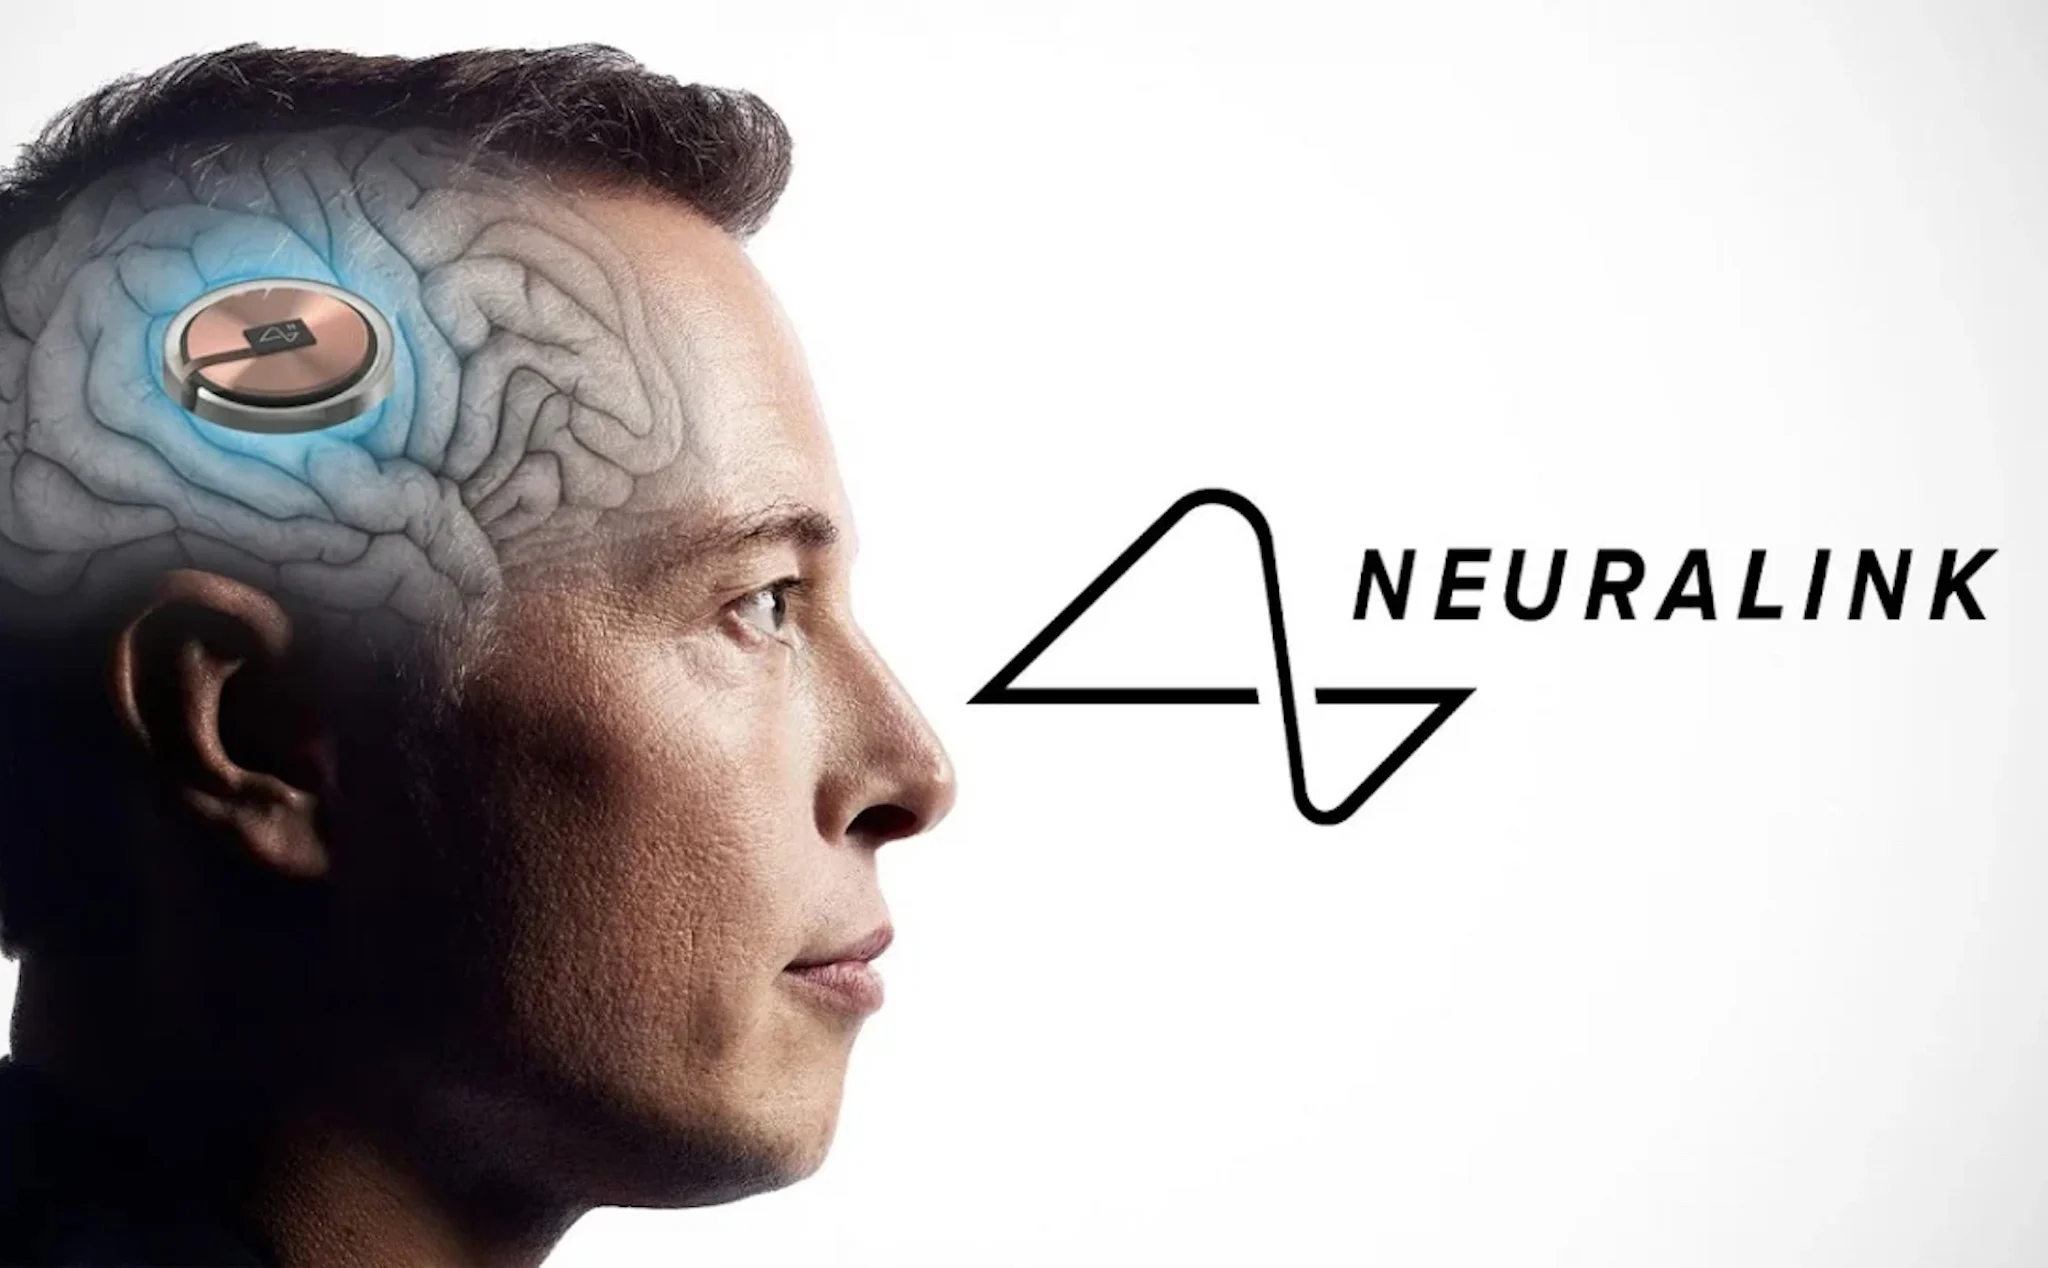 Dự án cấy ghép não của Elon Musk được chấp thuận thử nghiệm trên cơ thể người